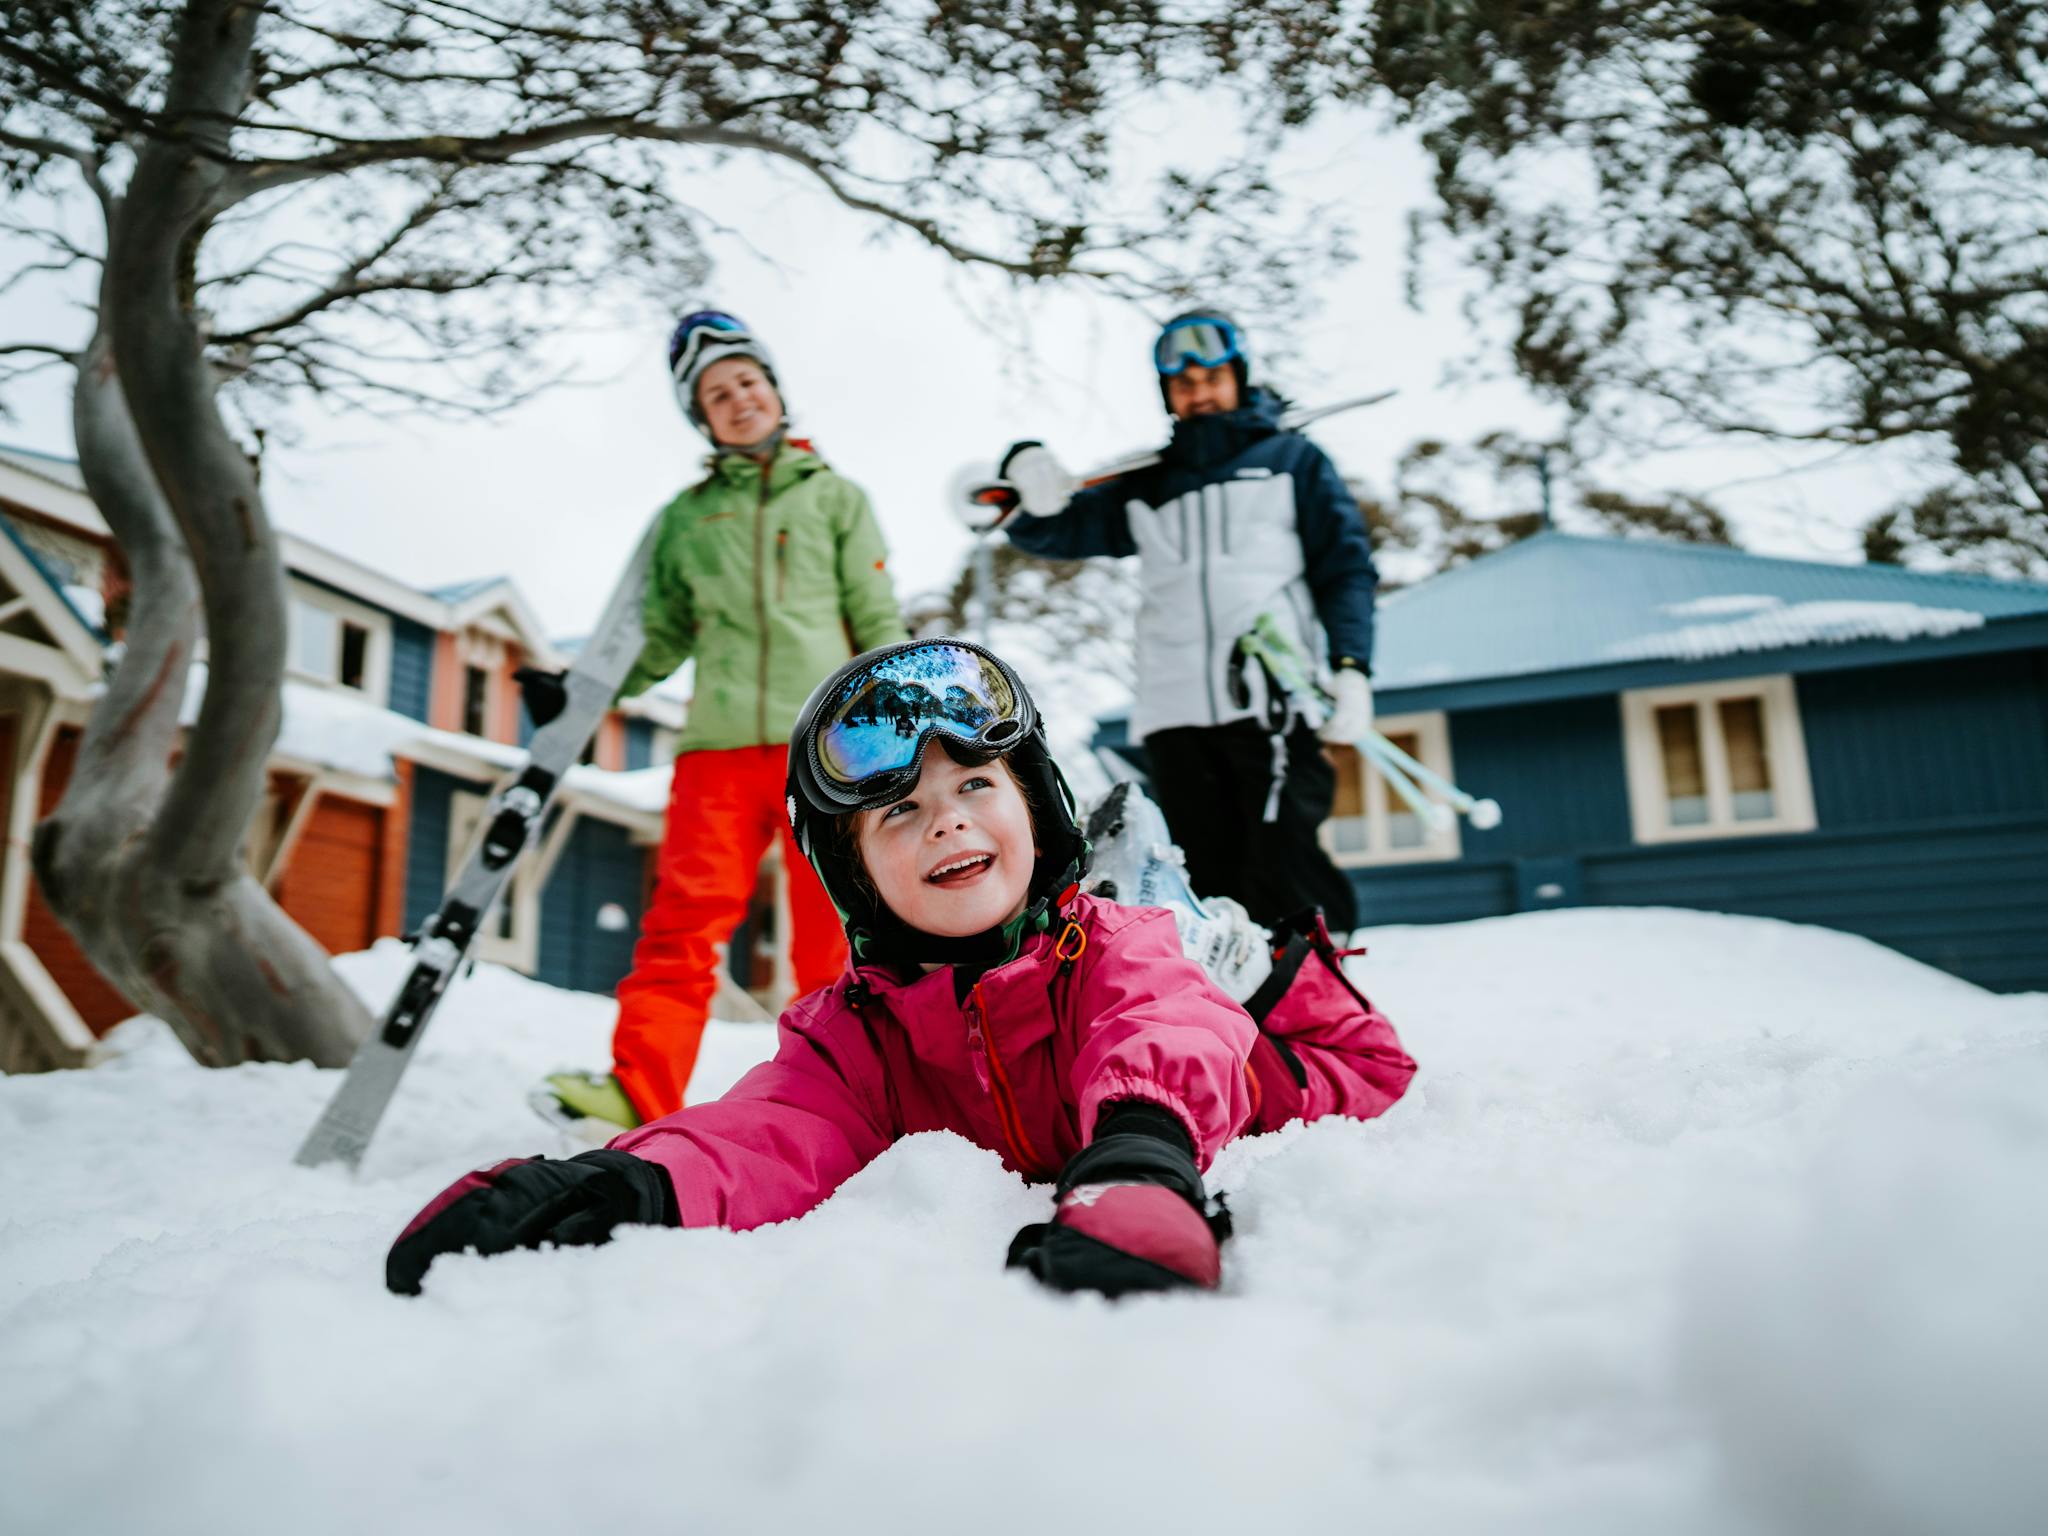 Family enjoys snow fun in Davenport Village